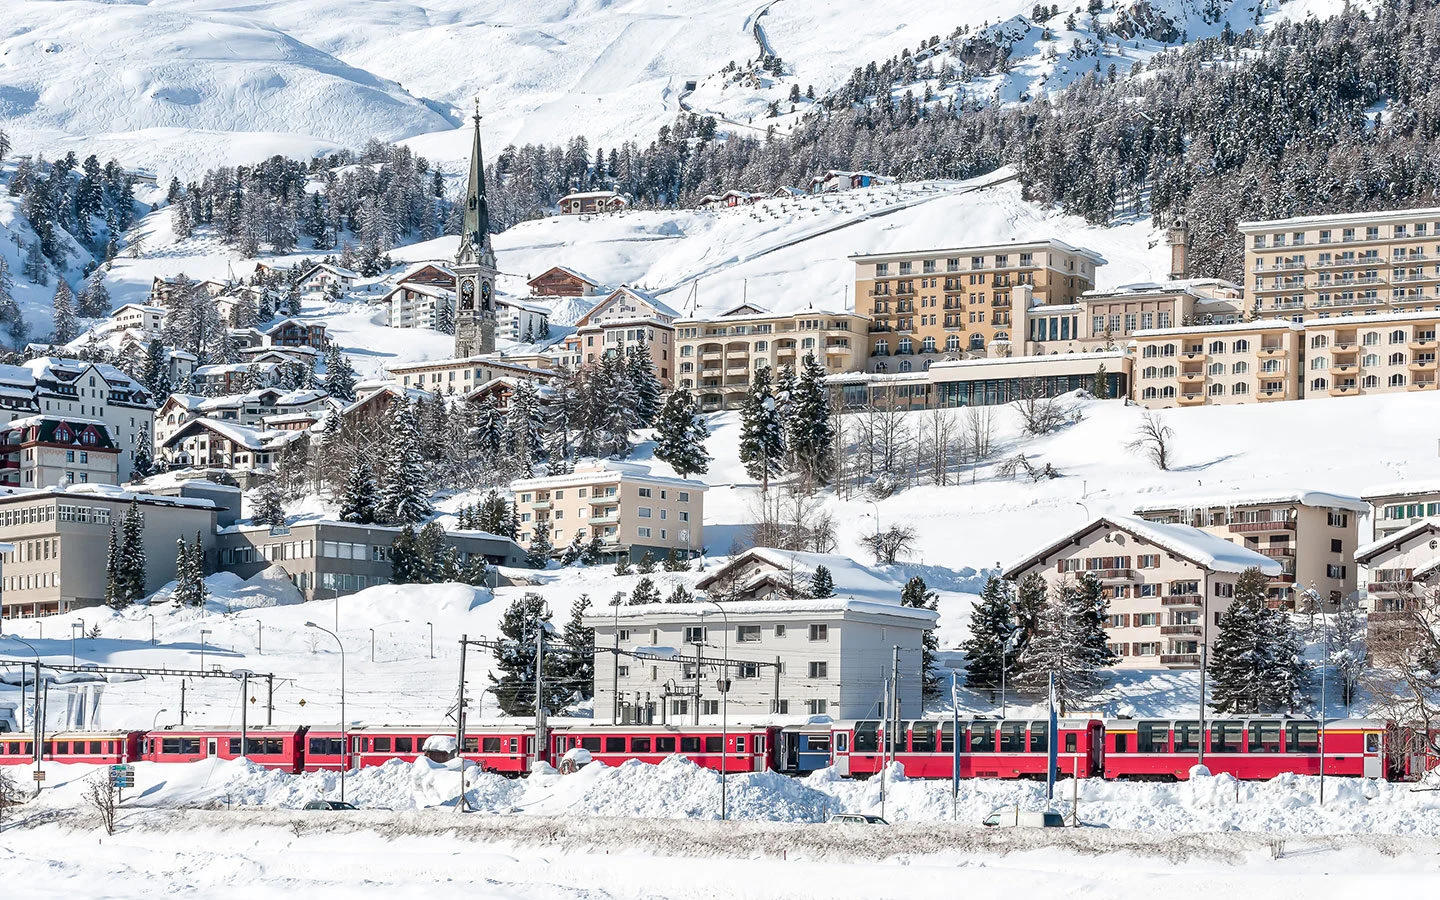 Train in St Moritz in winter